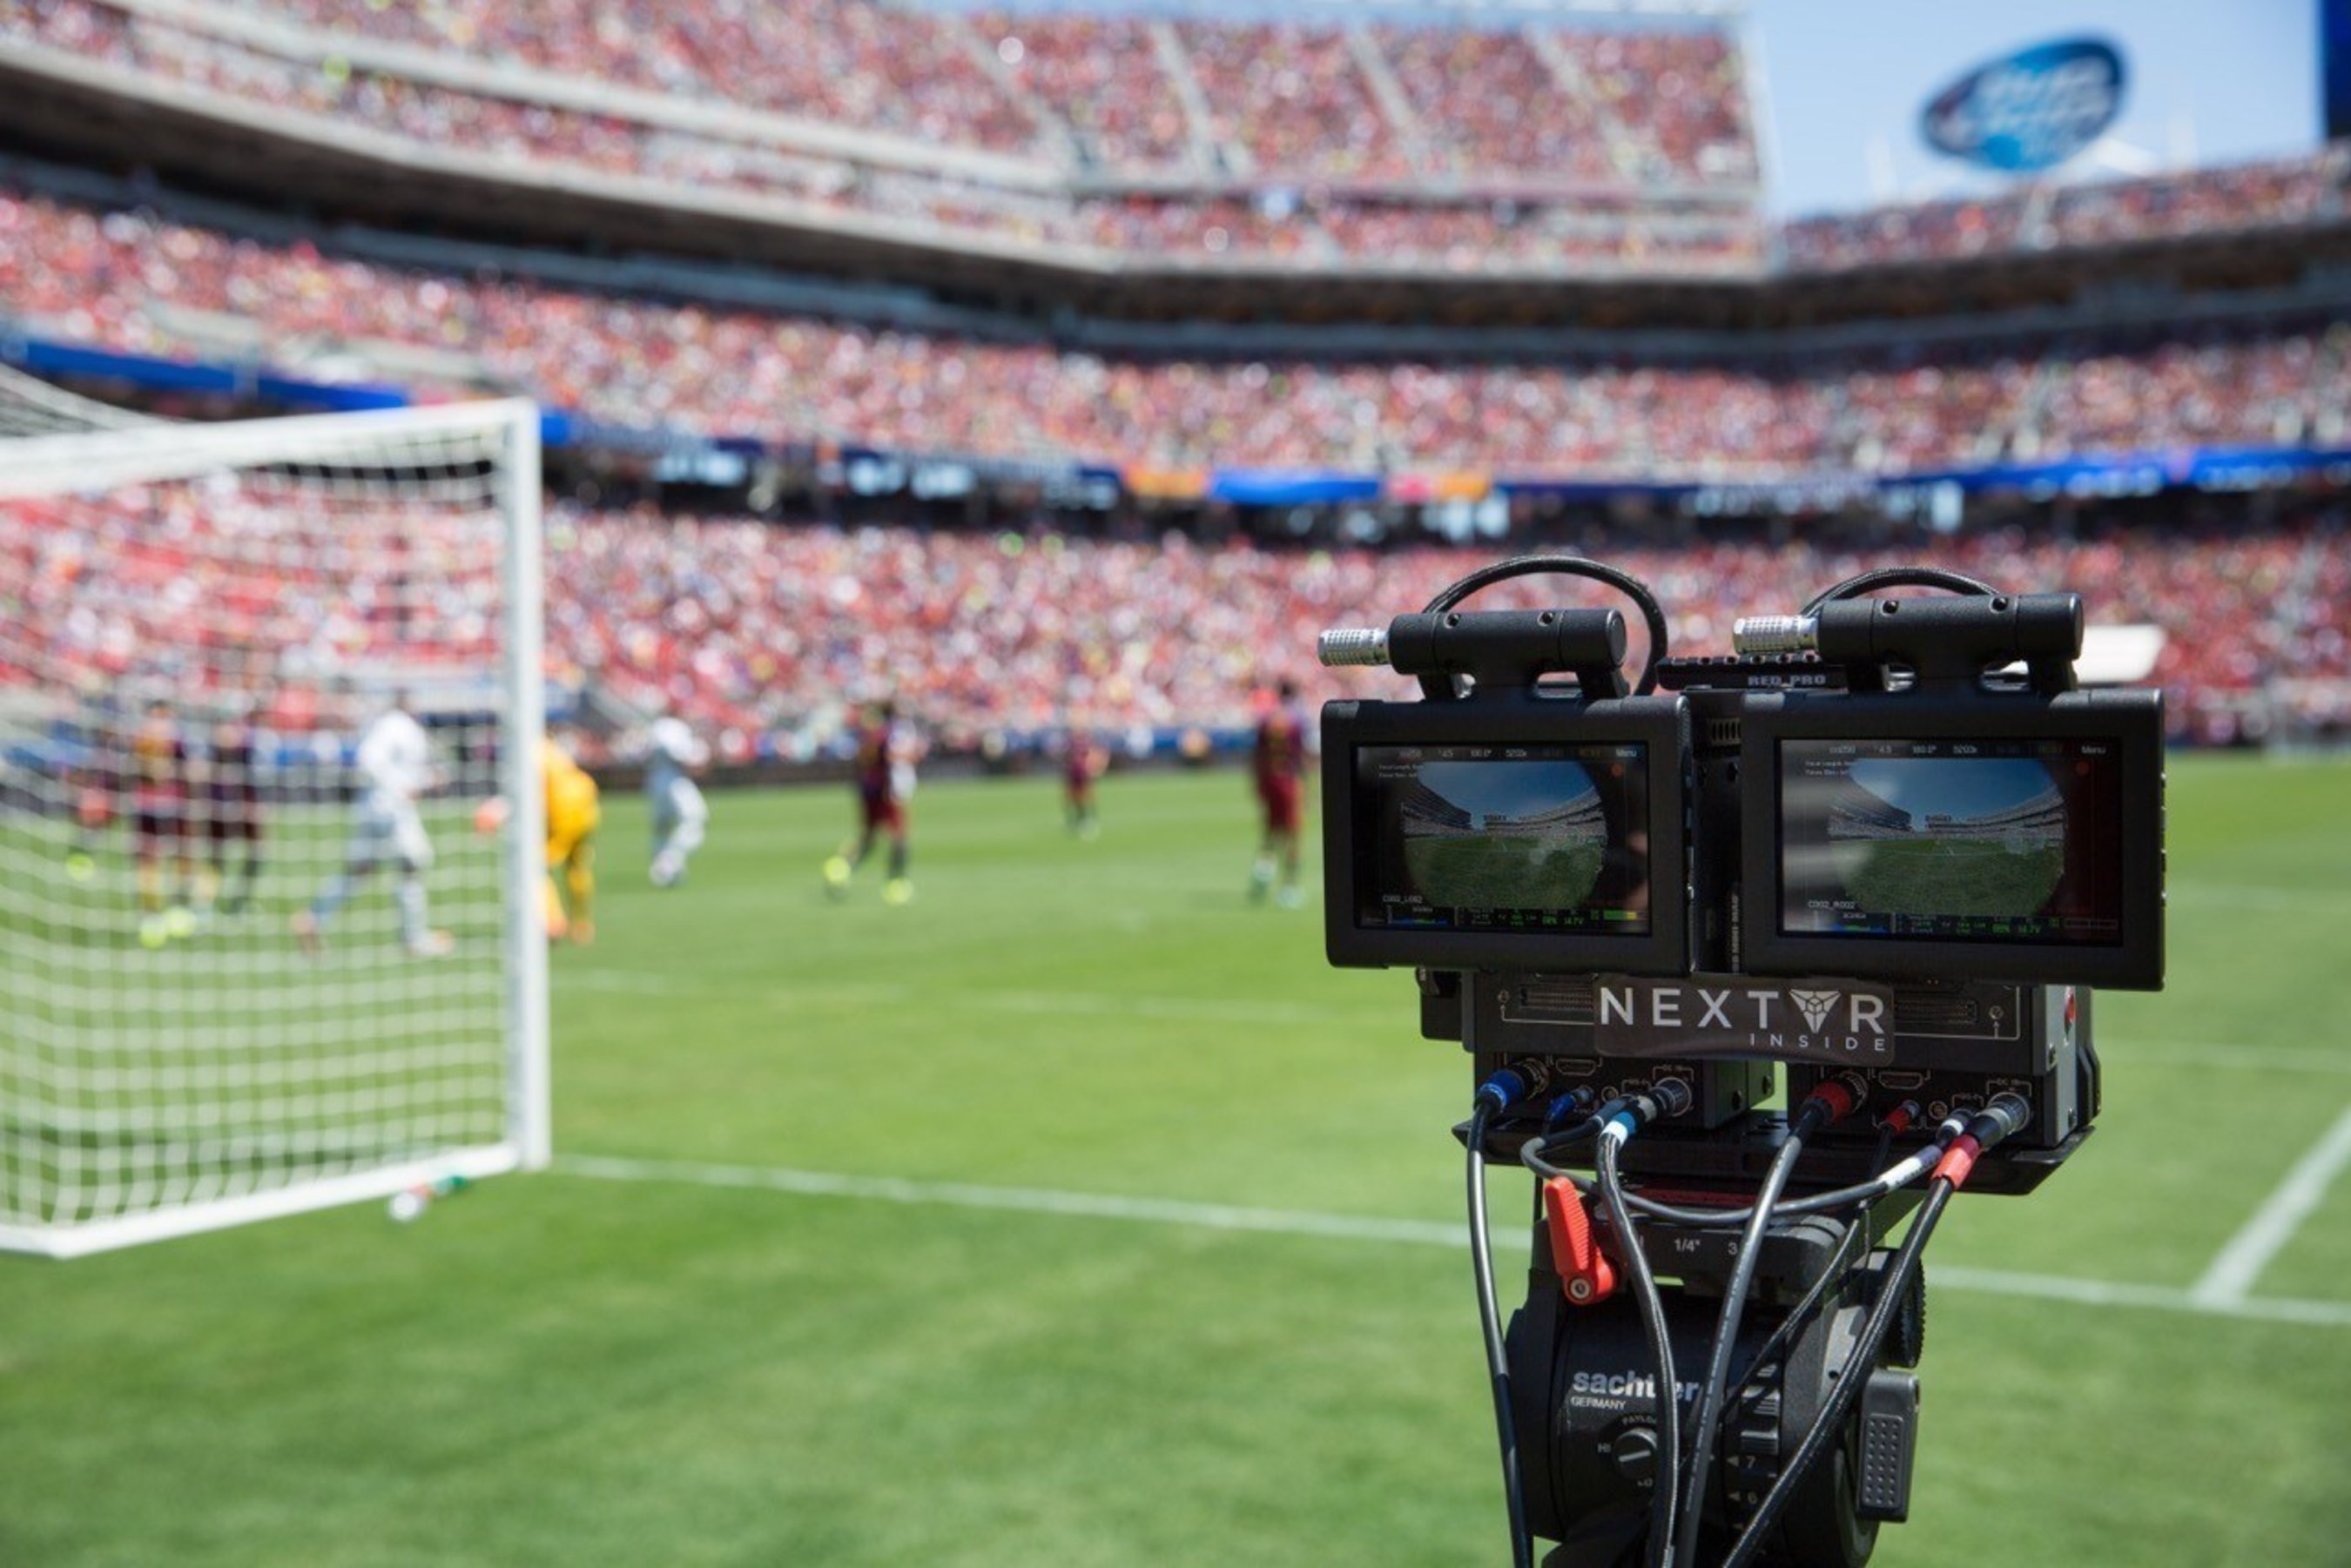 Jogos de futebol hoje: onde assistir ao vivo e horários - Market Insider